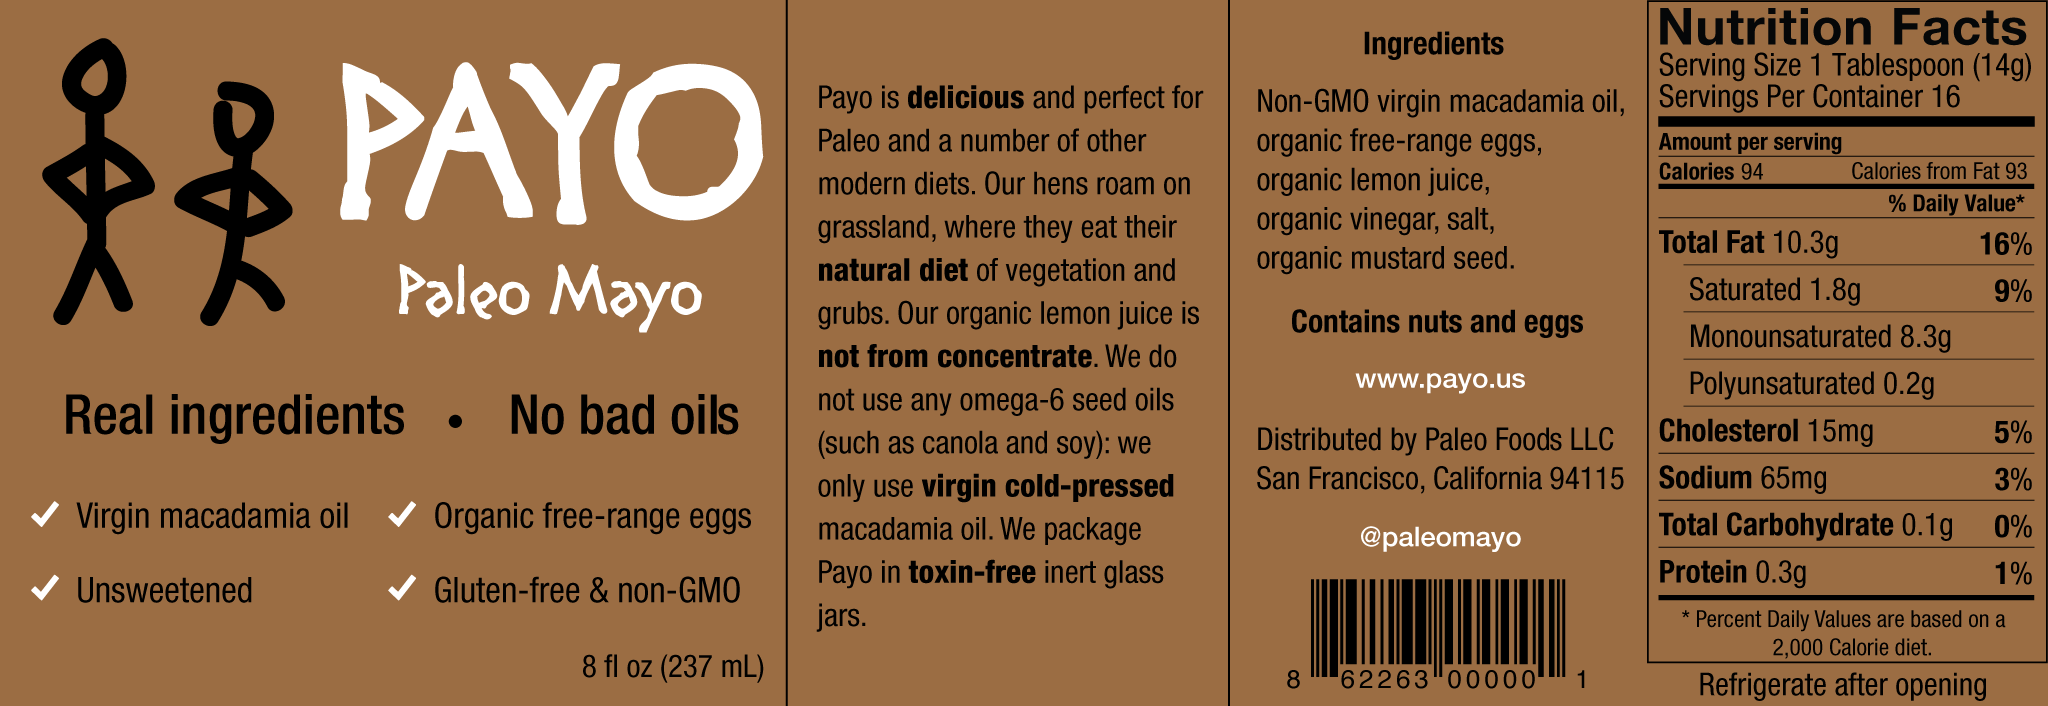 Payo Label